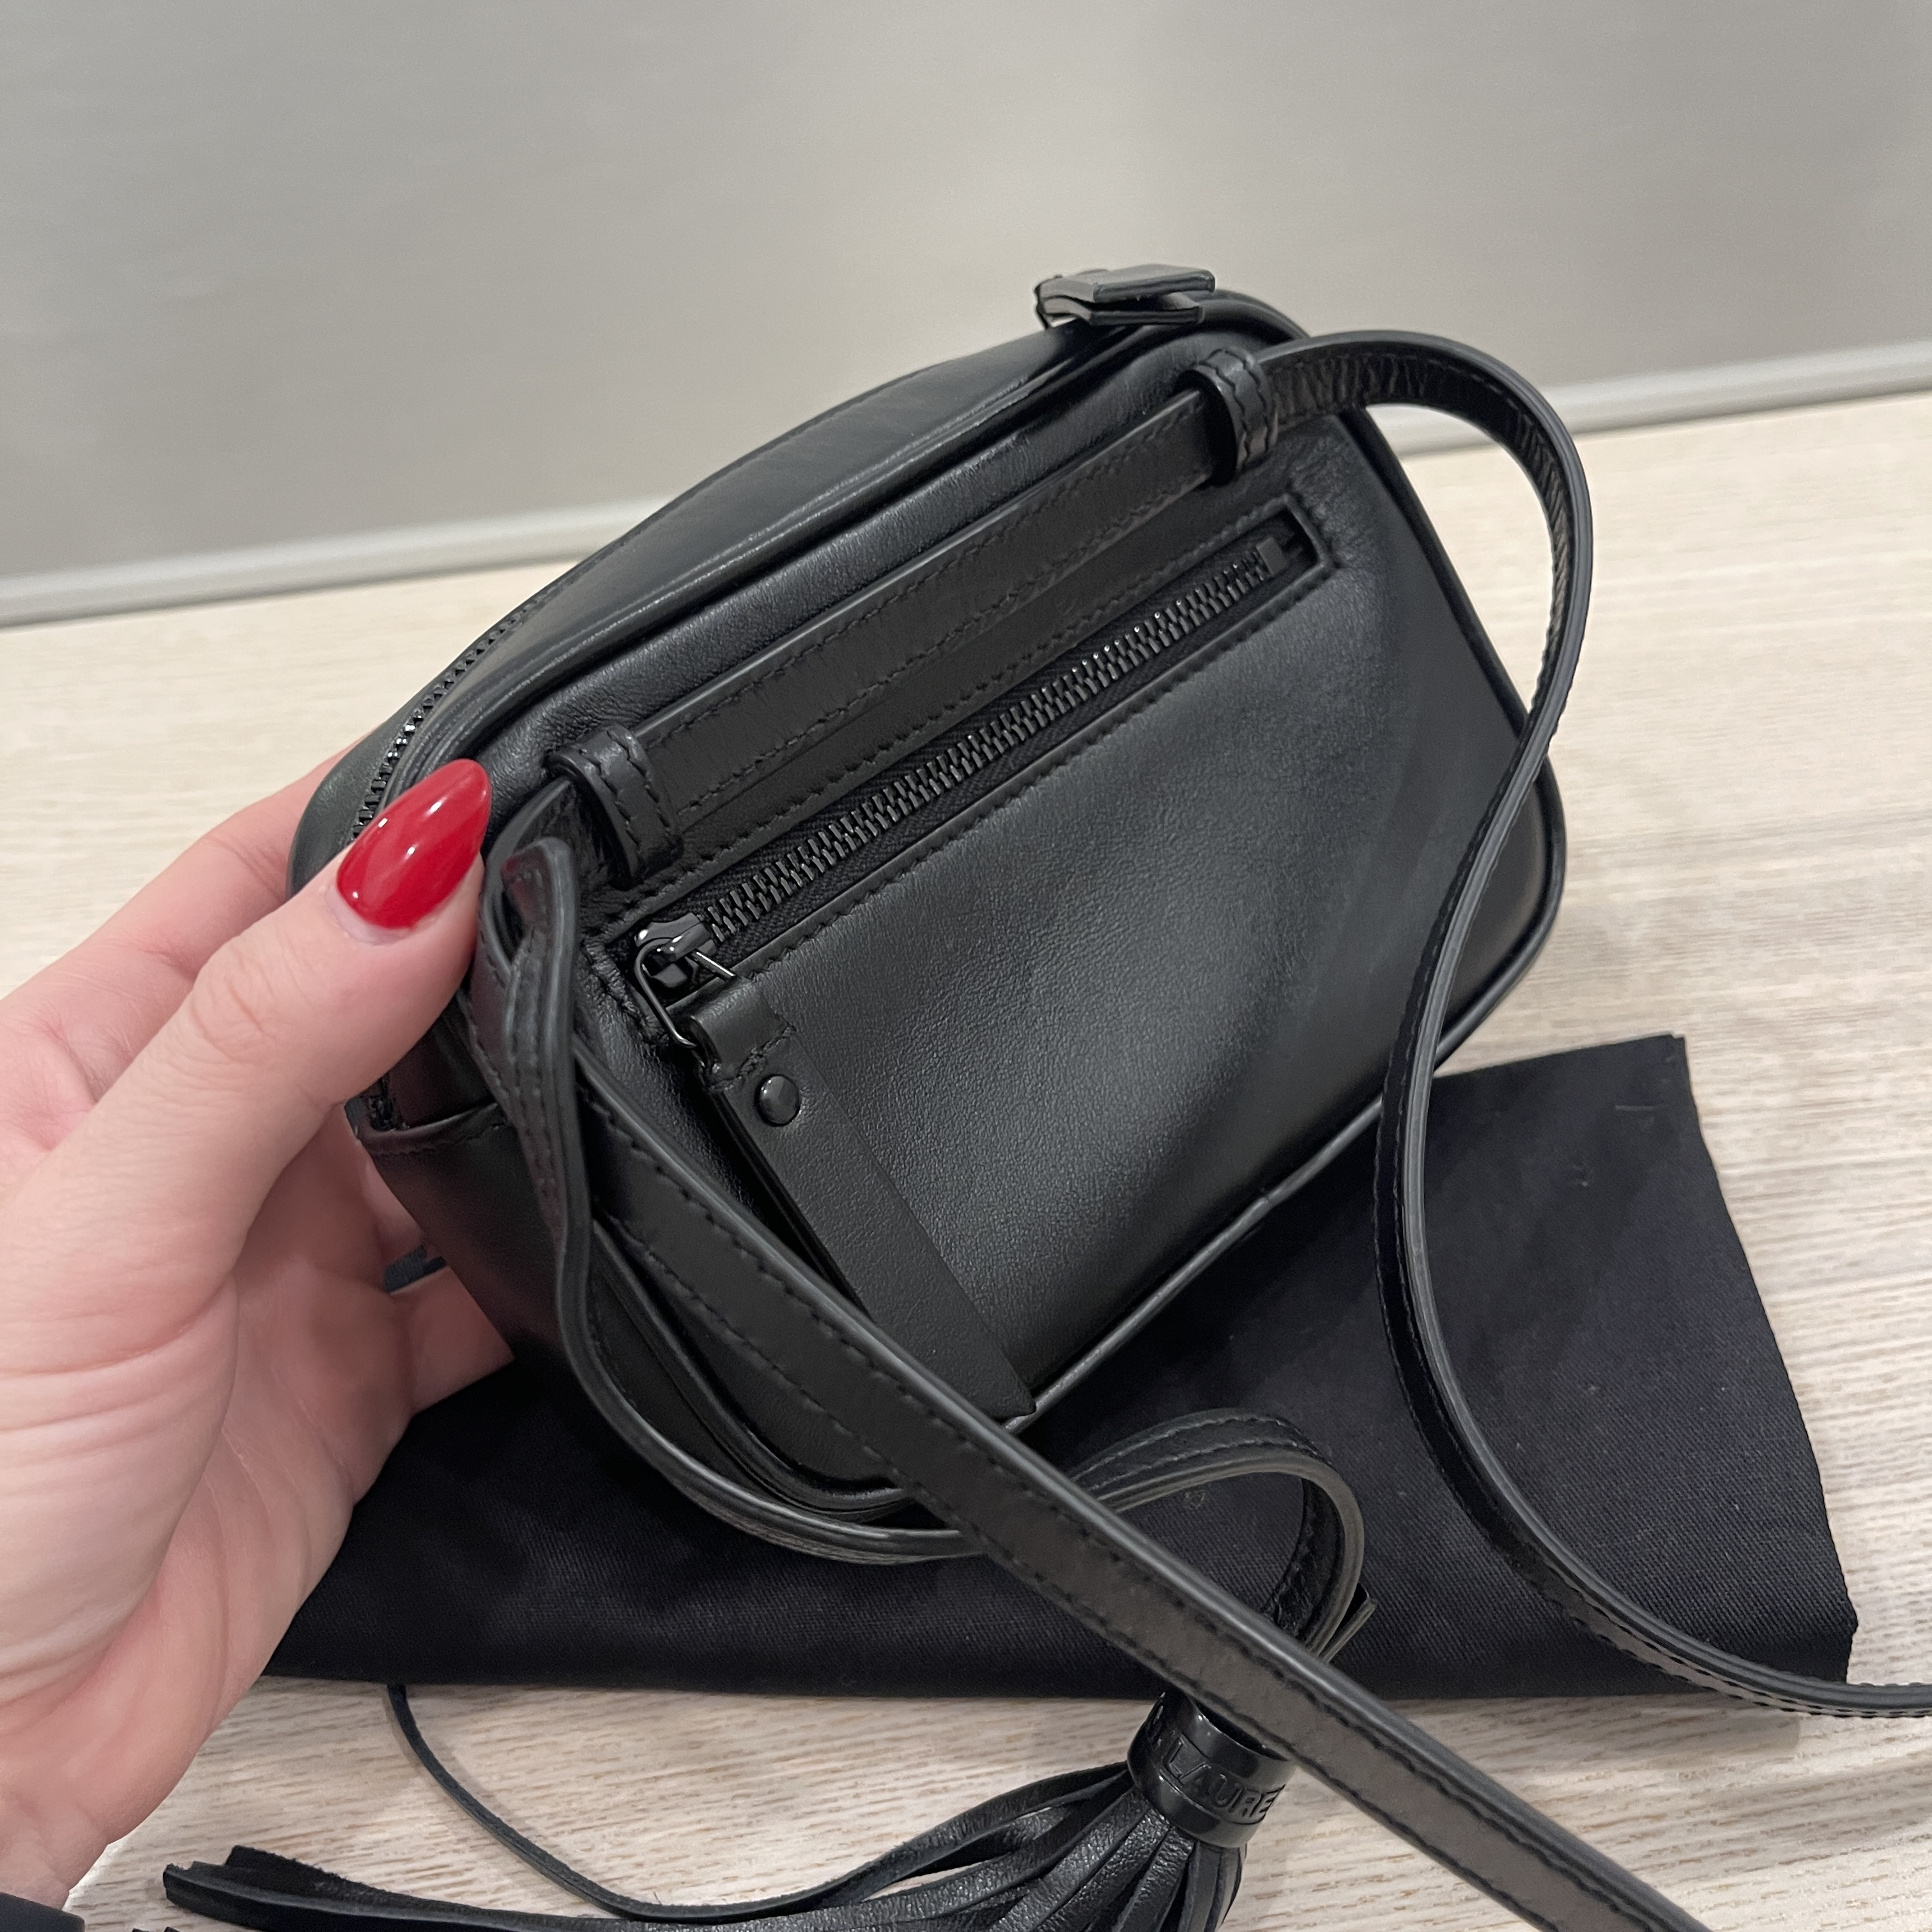 Saint Laurent Monogram Matelassé Lou Belt Bag - Black Waist Bags, Handbags  - SNT281851